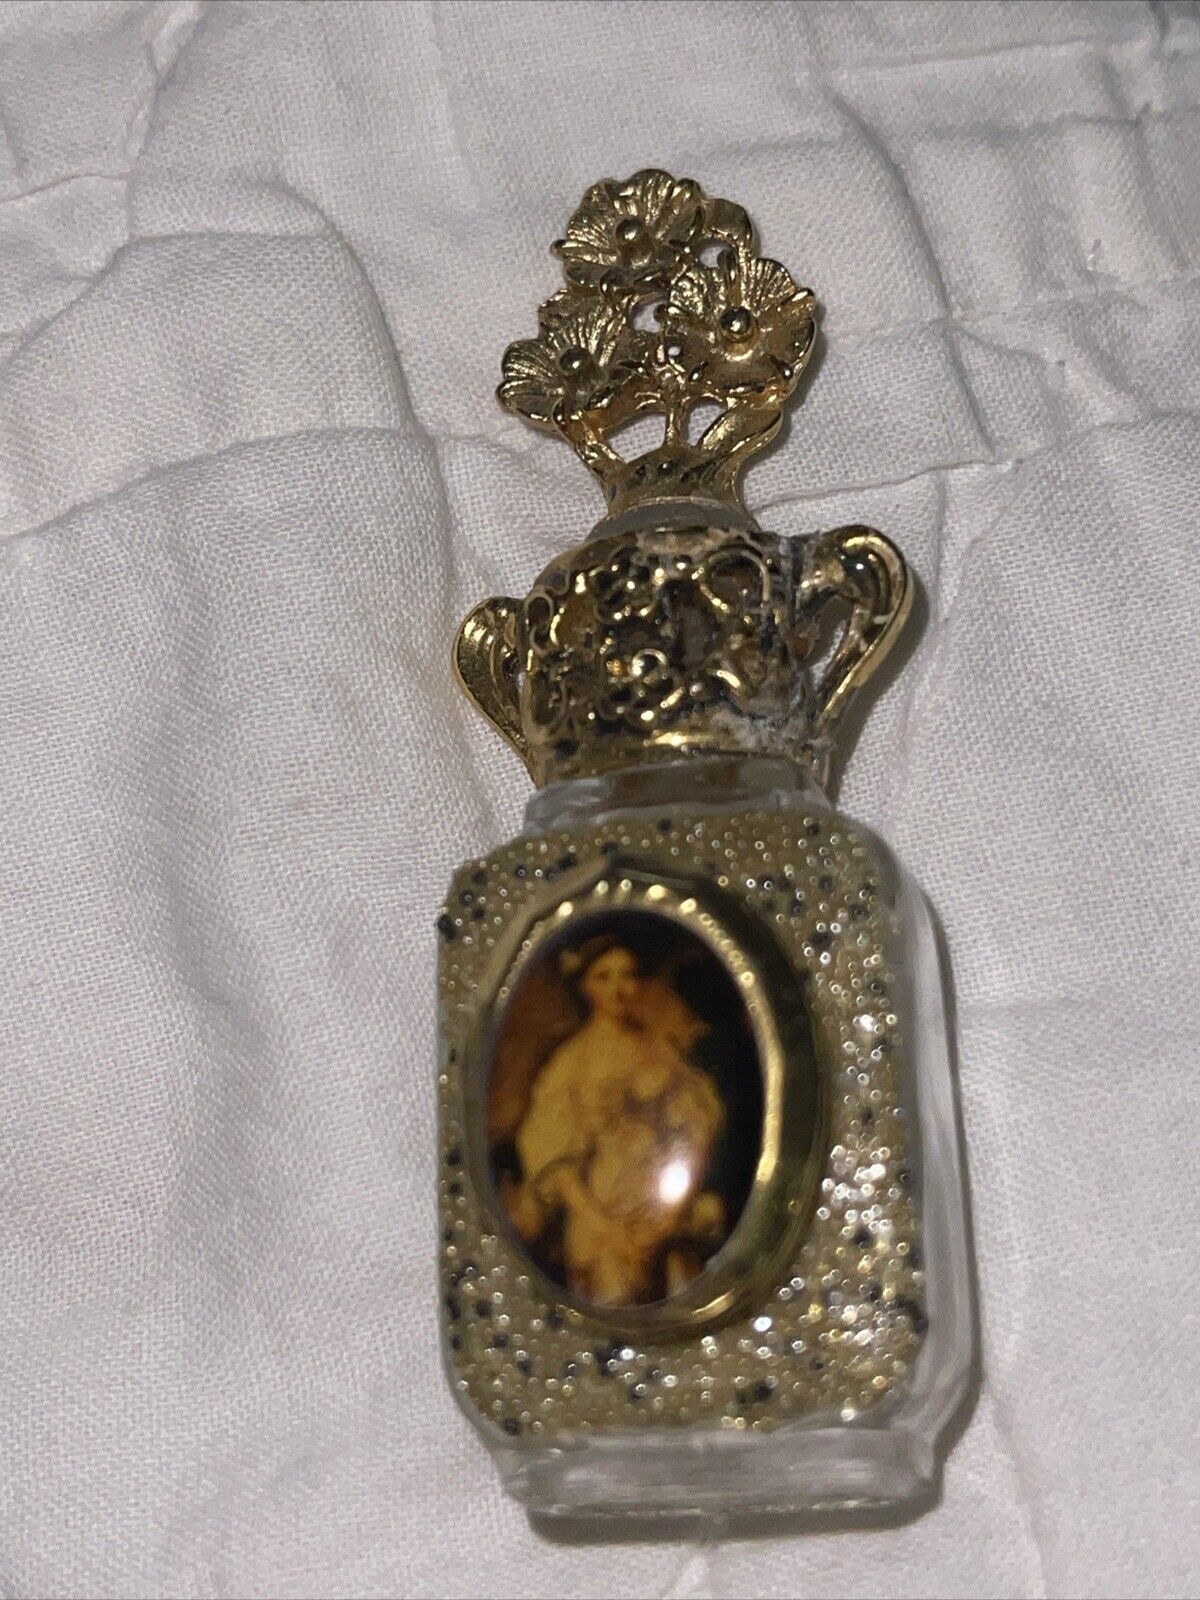 Vintage Adrian Designs Mona Lisa Locket Perfume Bottle Limited Edition 1/8oz